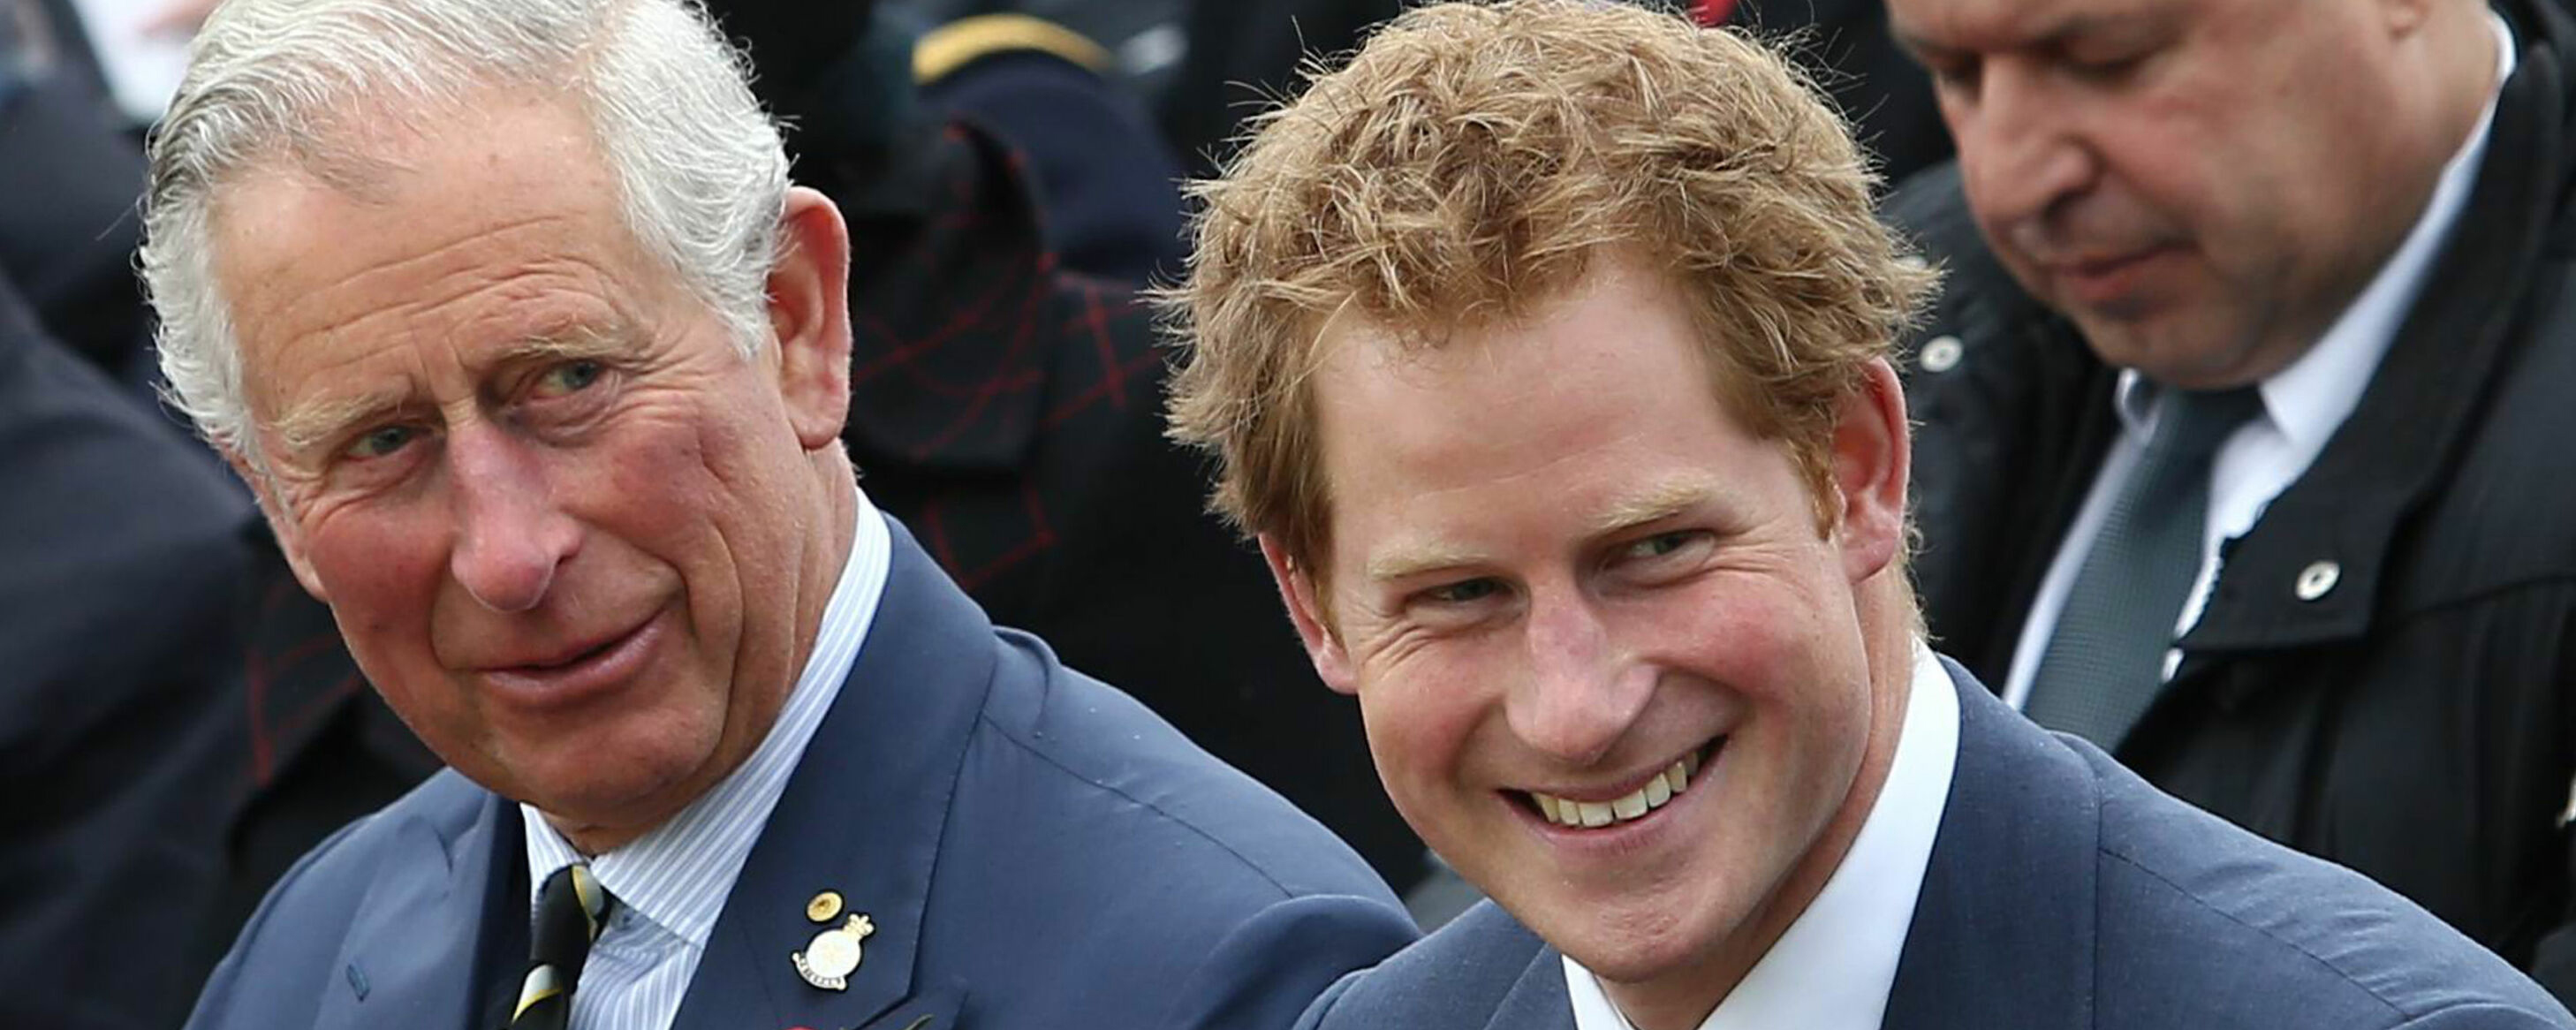 Принц Чарльз приглашал сына Гарри и его семью в Великобританию